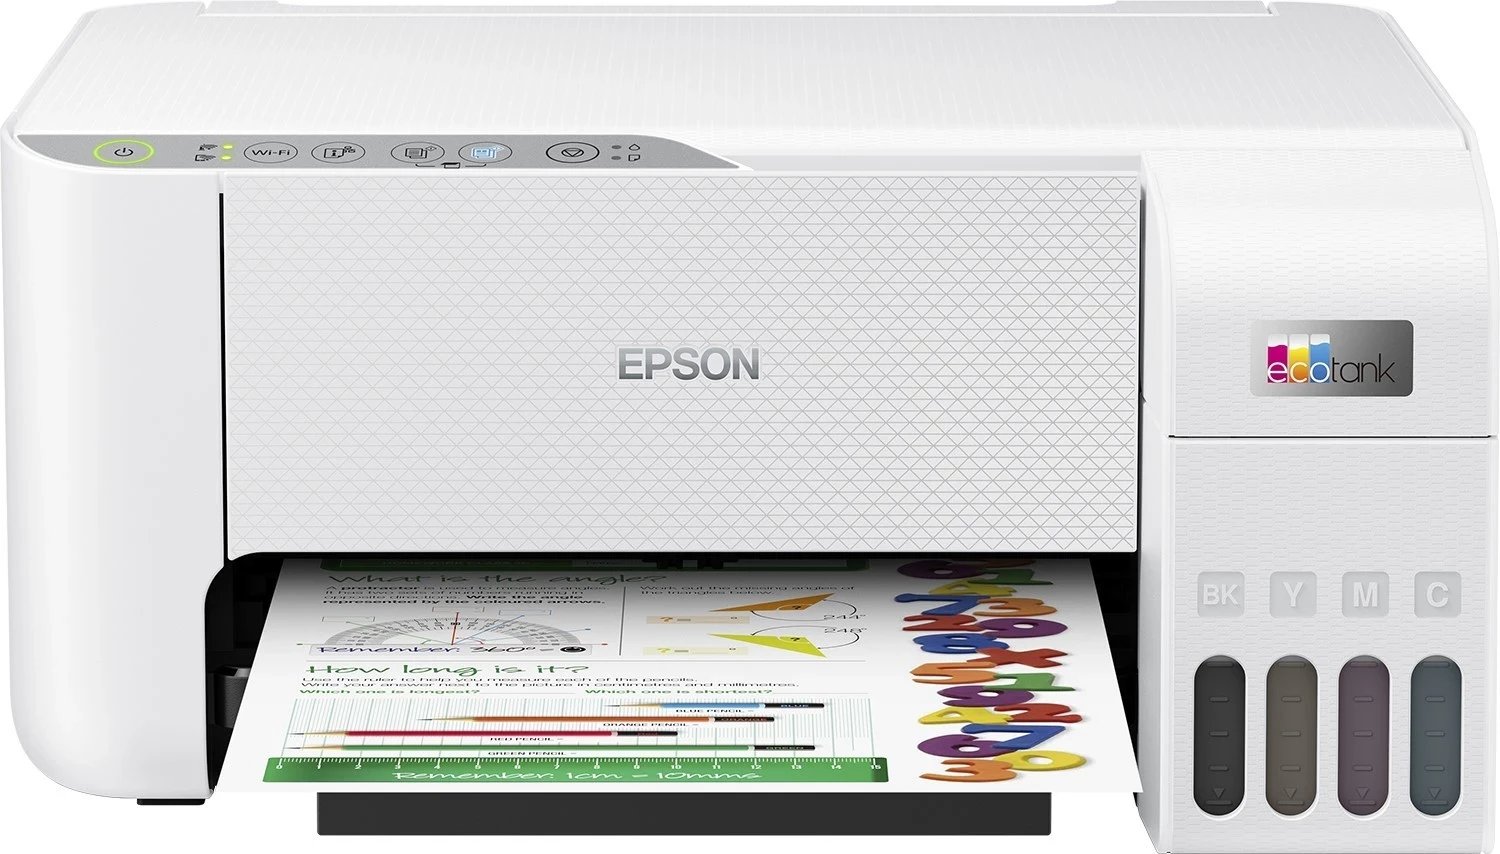 Printer Epson L3256, i bardhë